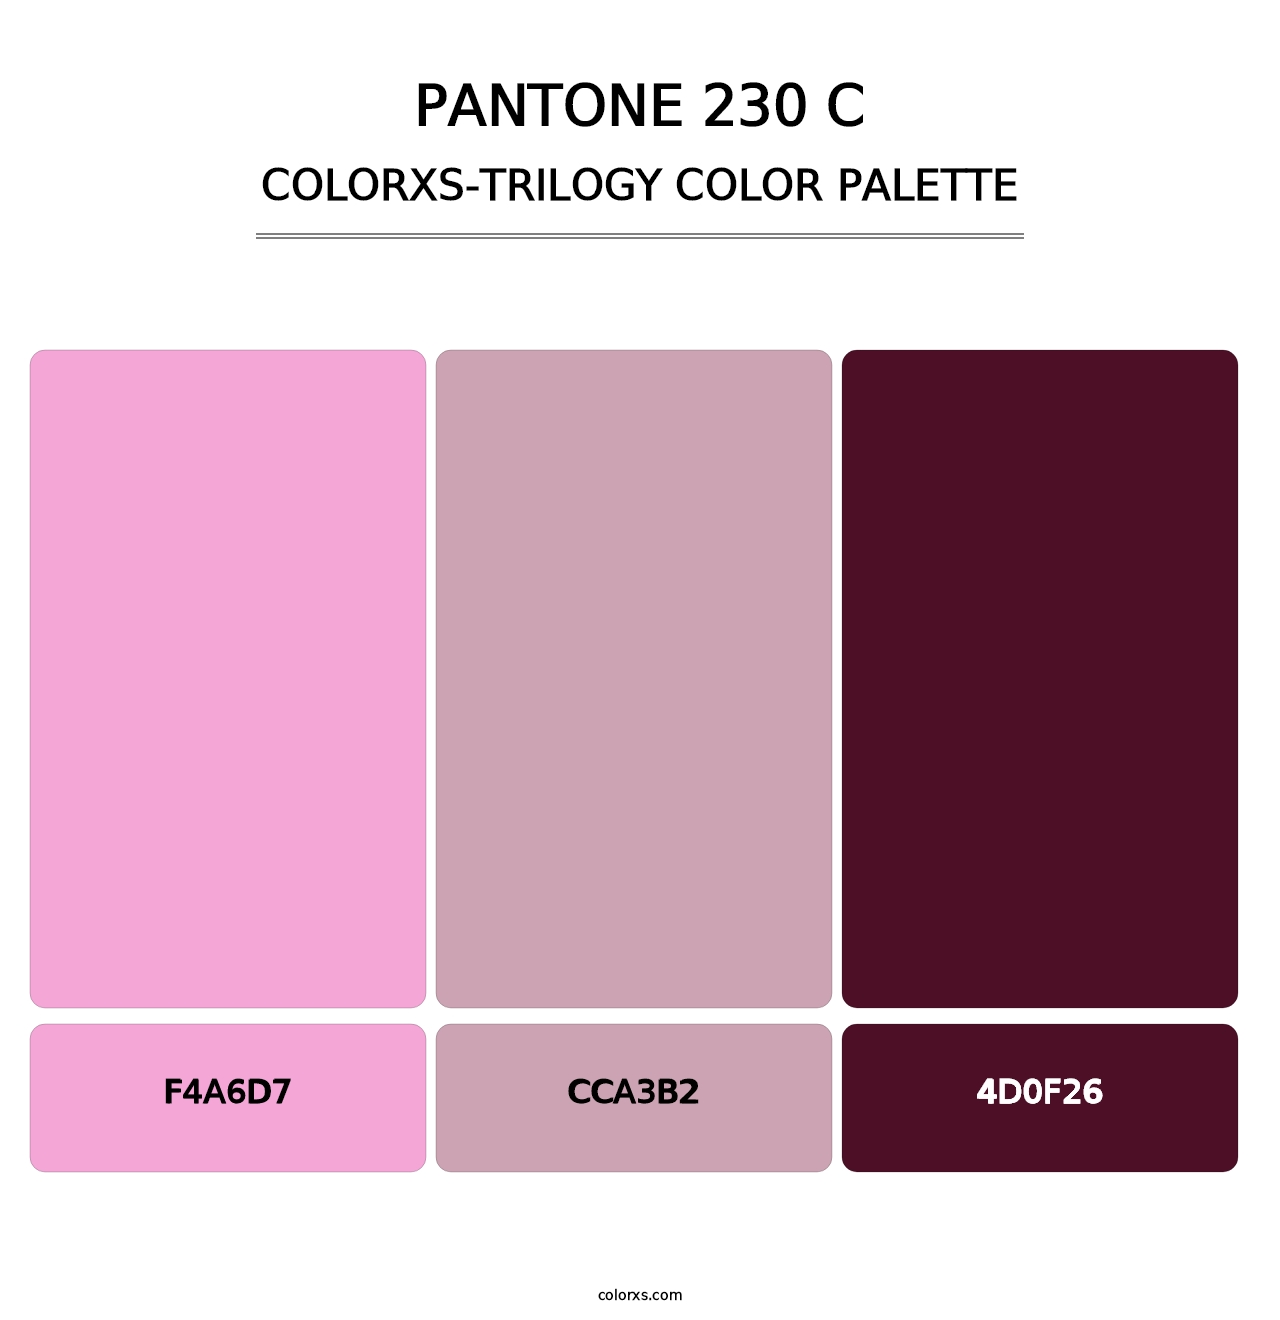 PANTONE 230 C - Colorxs Trilogy Palette